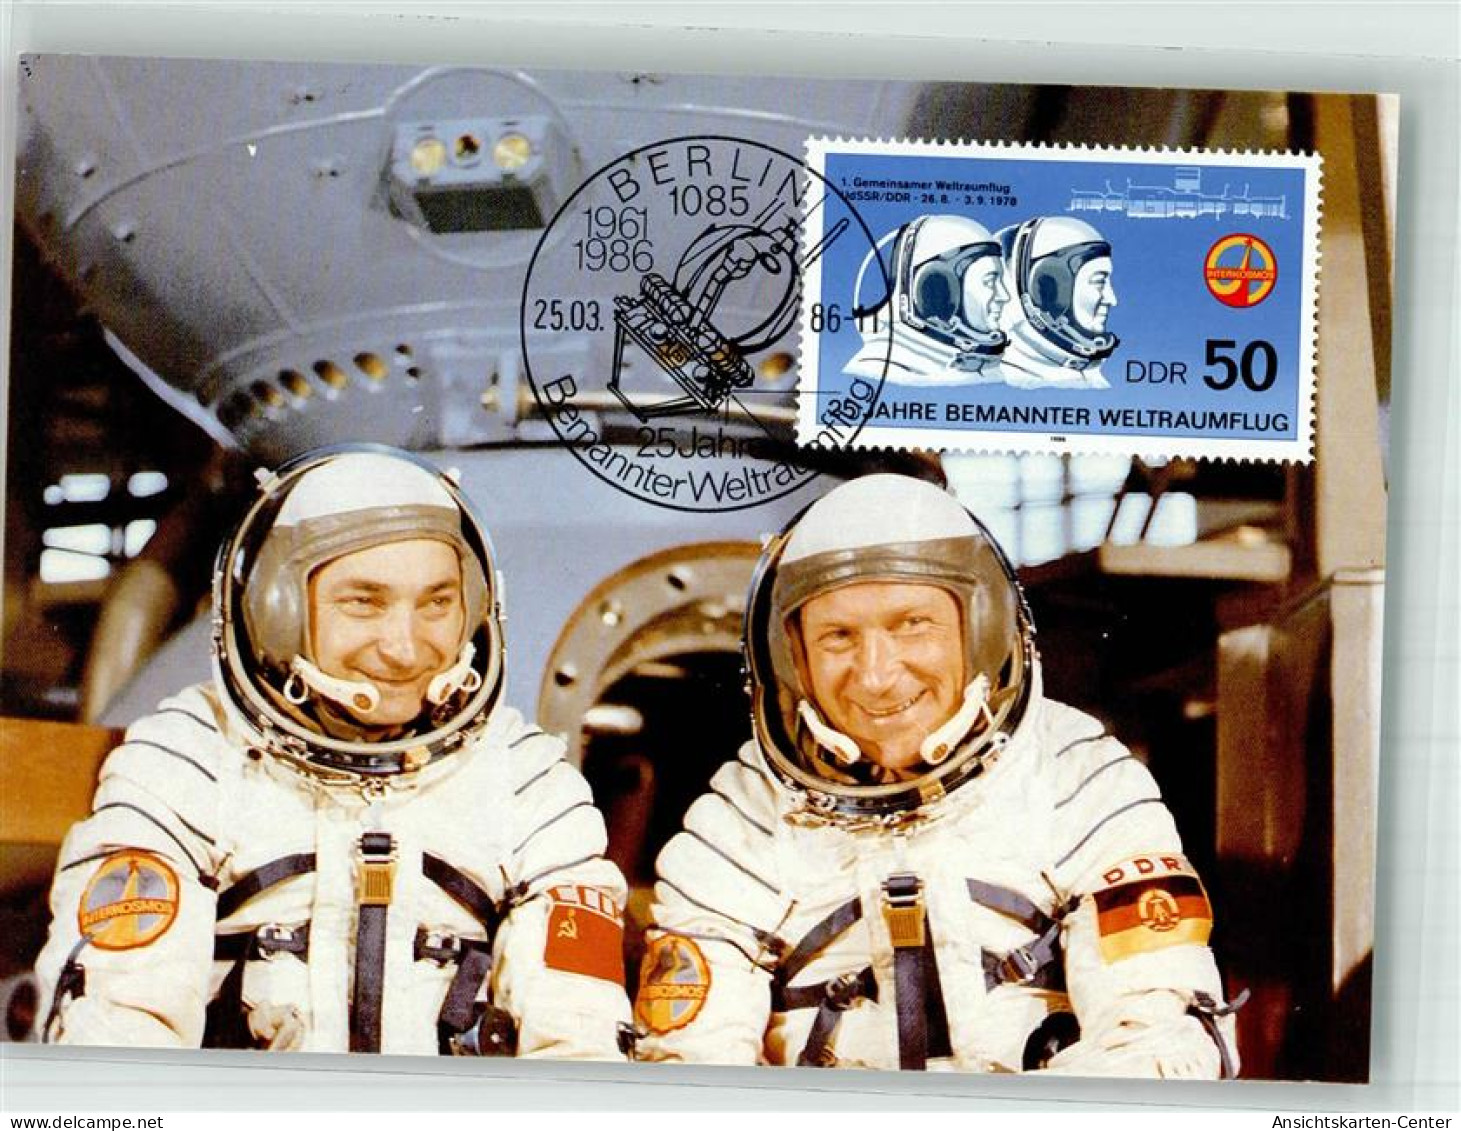 39867307 - Astronauten Waleri Bykowski Und Sigmund Jaehn 1 Gemeinsamer Weltraumflug 1978 Sondermarke Sonderstempel - Espace